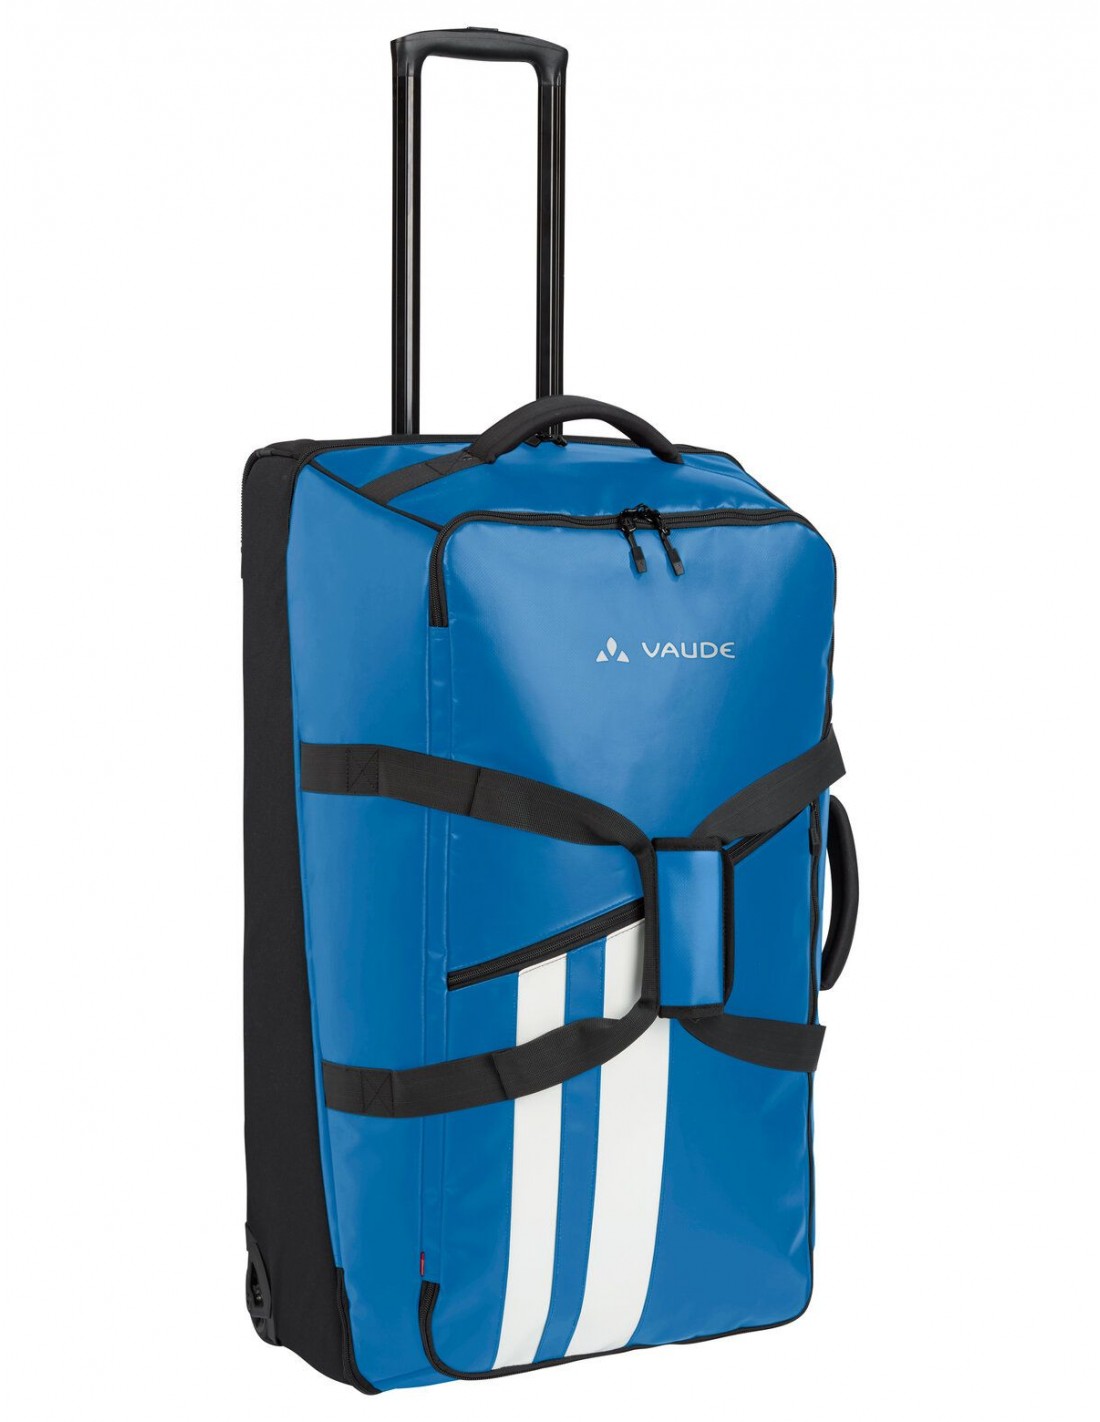 Vaude Reisetasche Rotuma 90 Liter, azure (blau), Tragegriff, mit Rollen, PVC-frei, für Reisende und Wanderer von Vaude